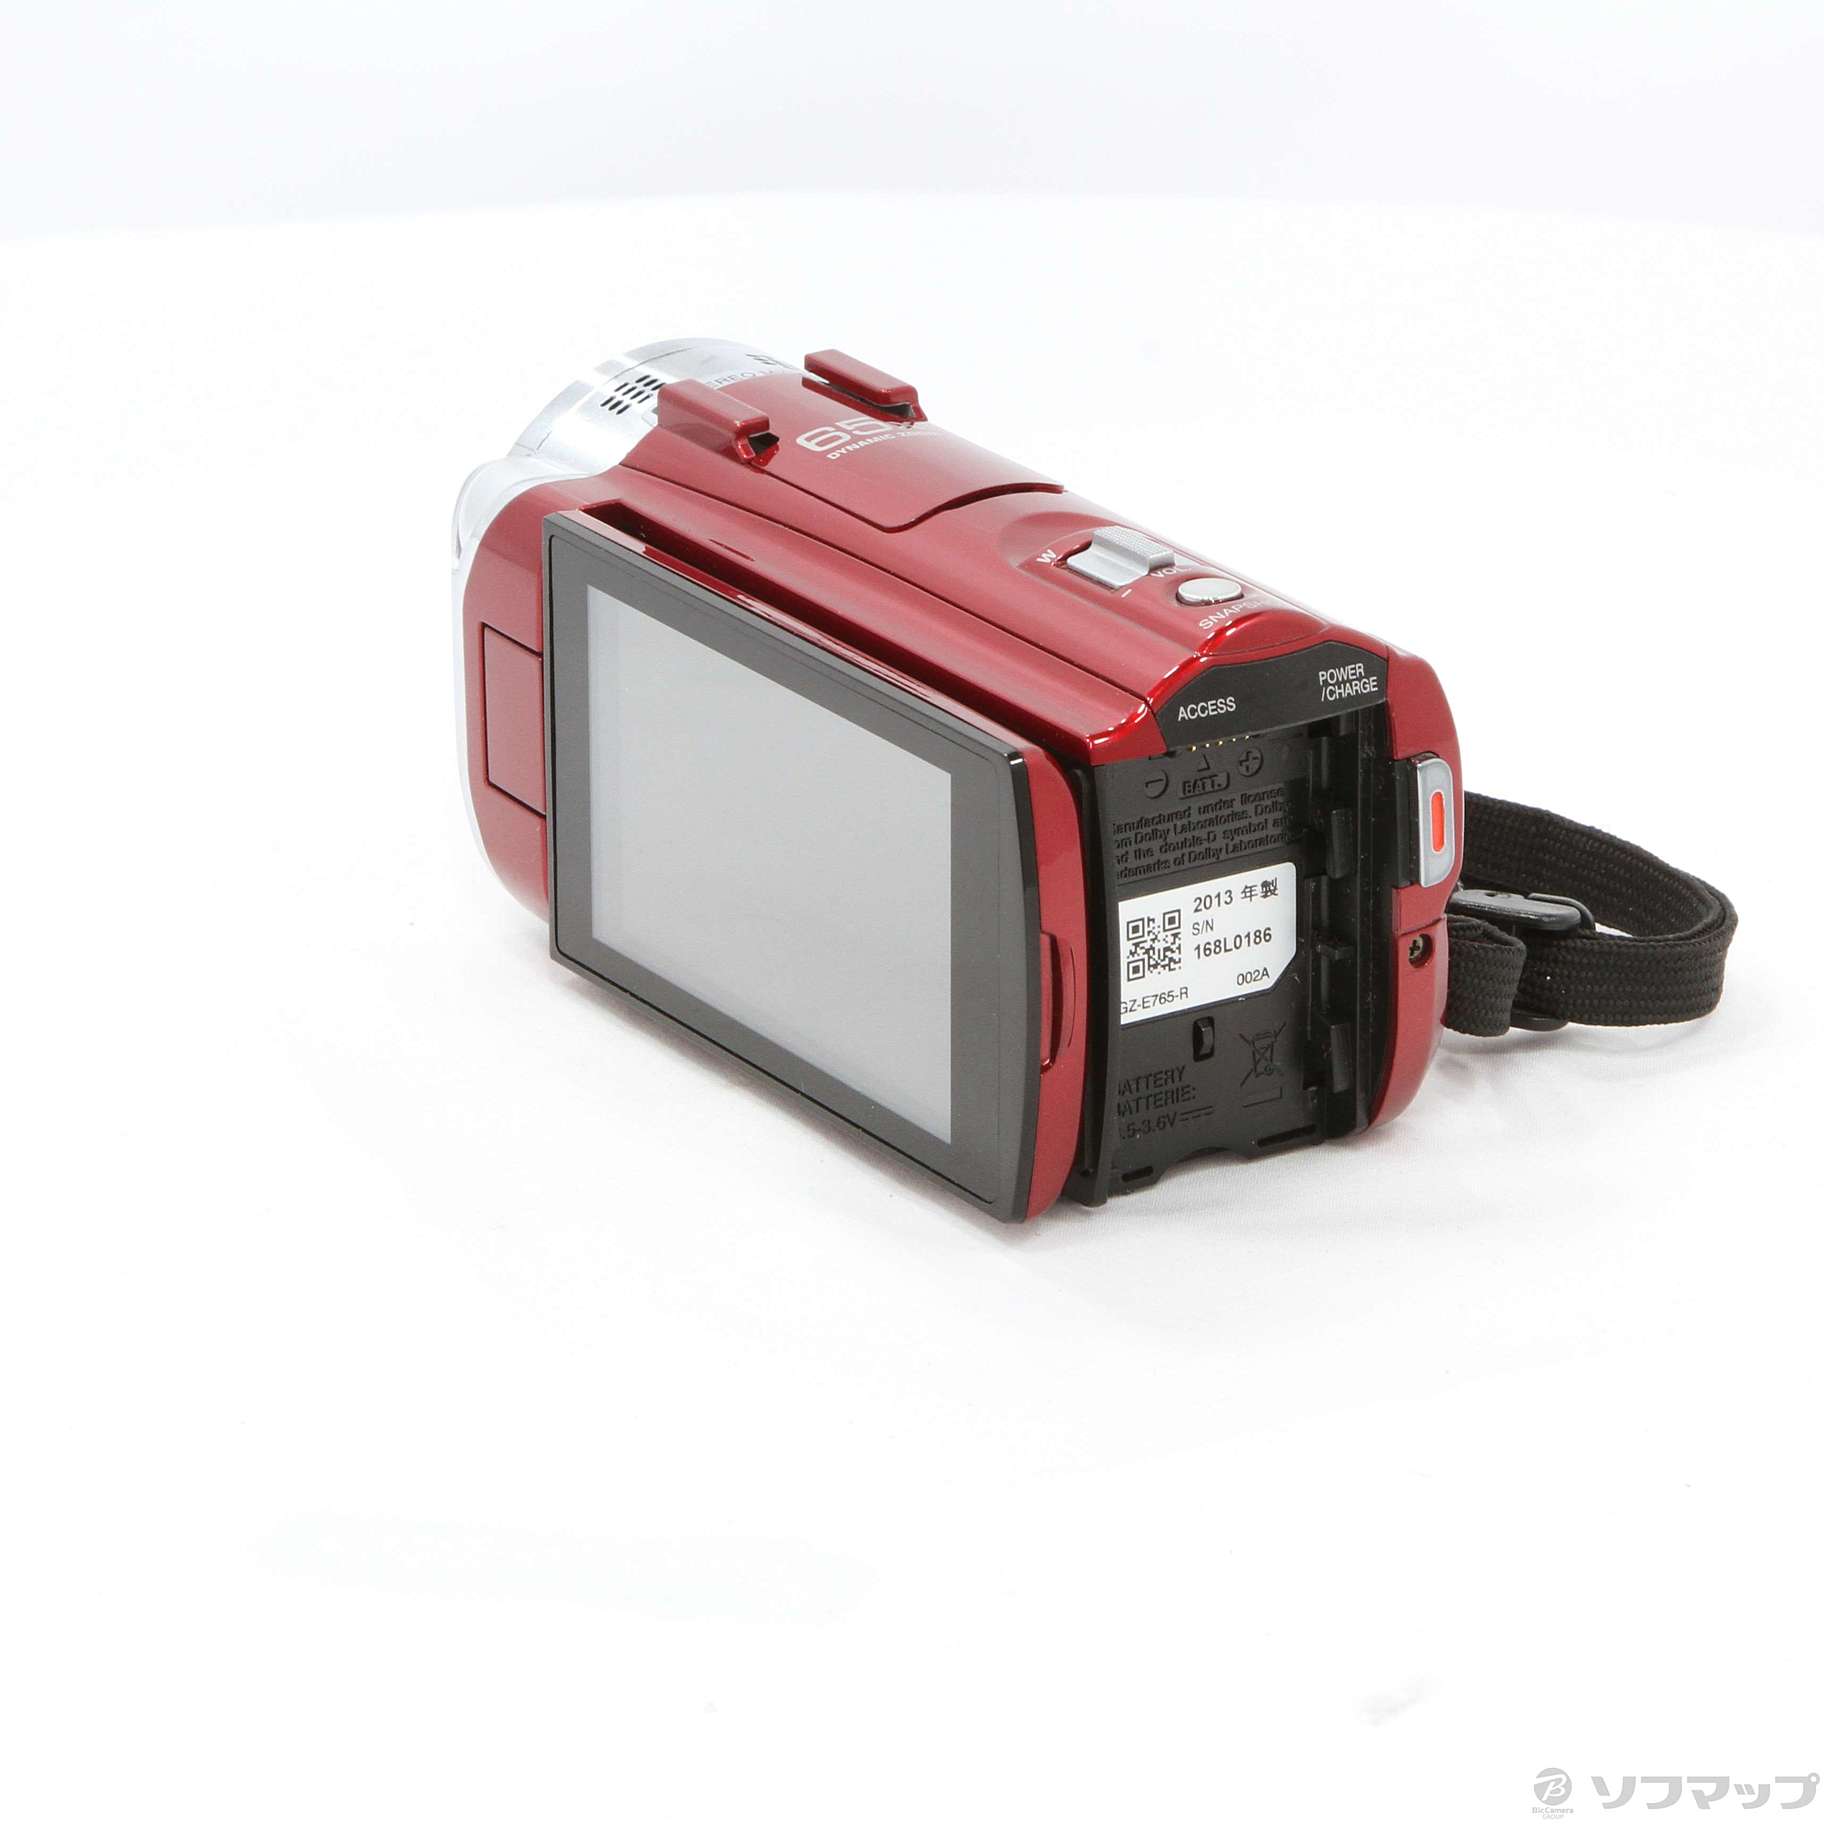 2400円 予約販売品 Victor JVC GZ-E765-W ビデオケース付き